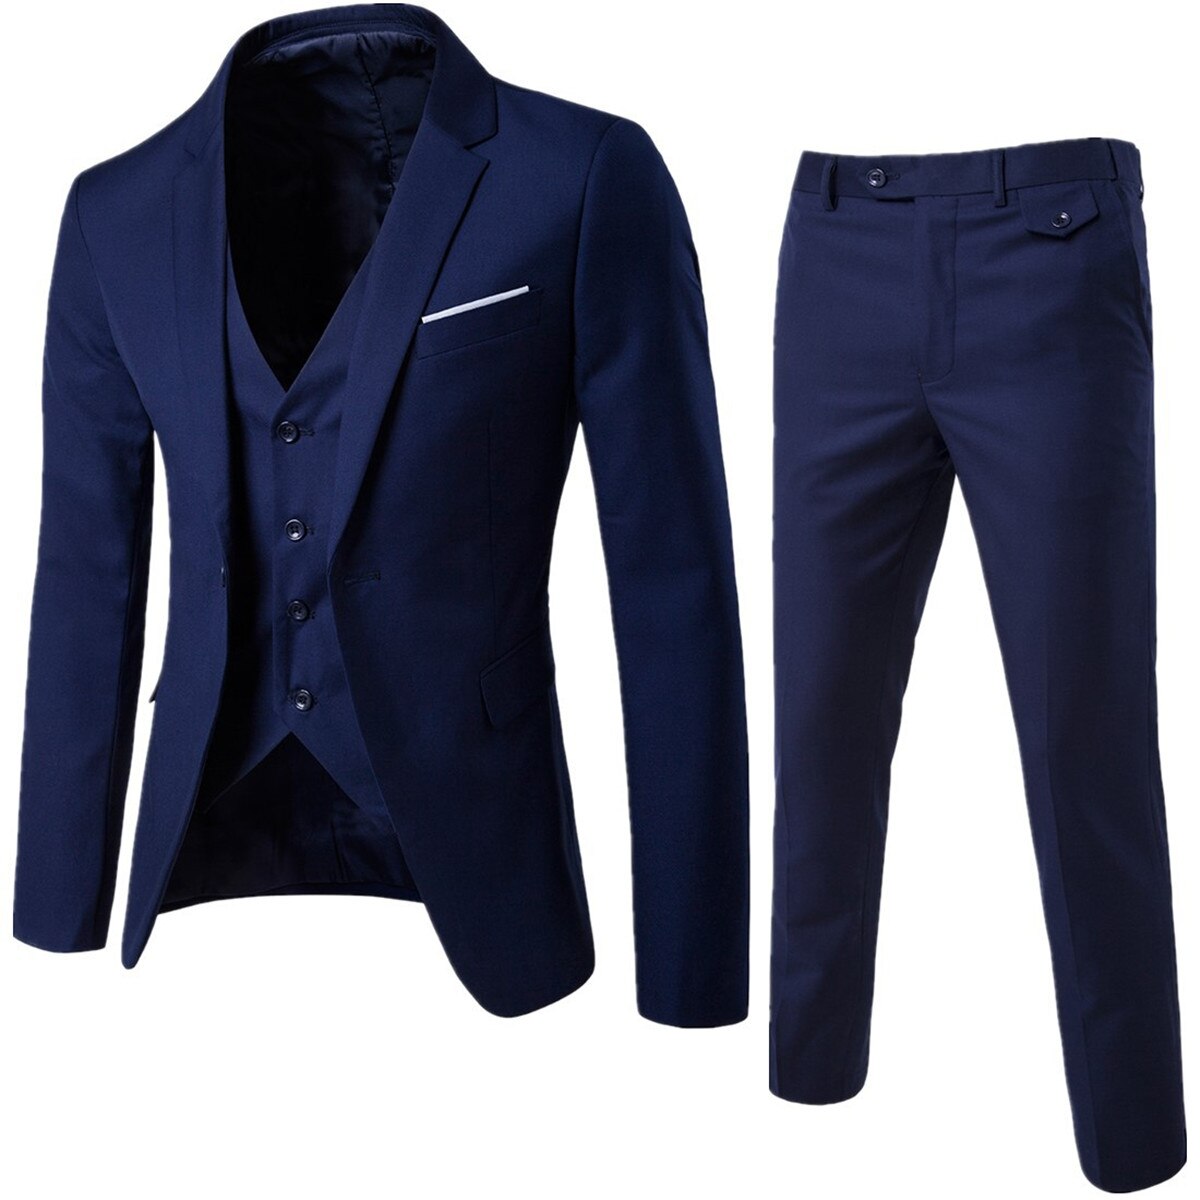 3 Pieces Black Elegant Suits+Pants Brand Slim Fit Single Button Party Formal Business Dress Suit Terno Wedding Suits for Men